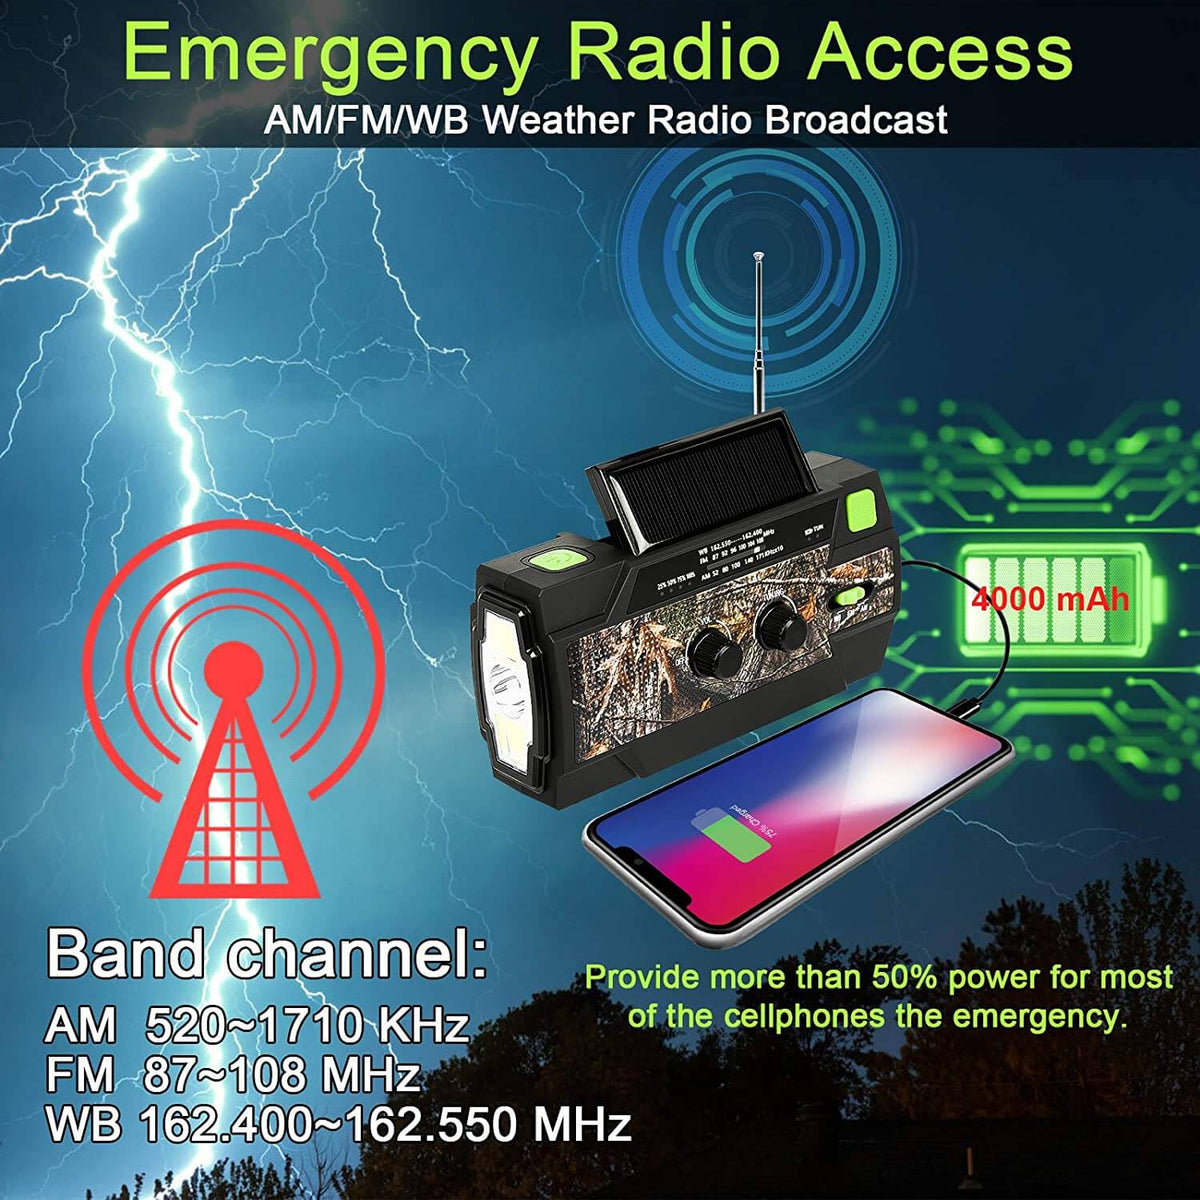 Radio portatile a manovella solare di emergenza